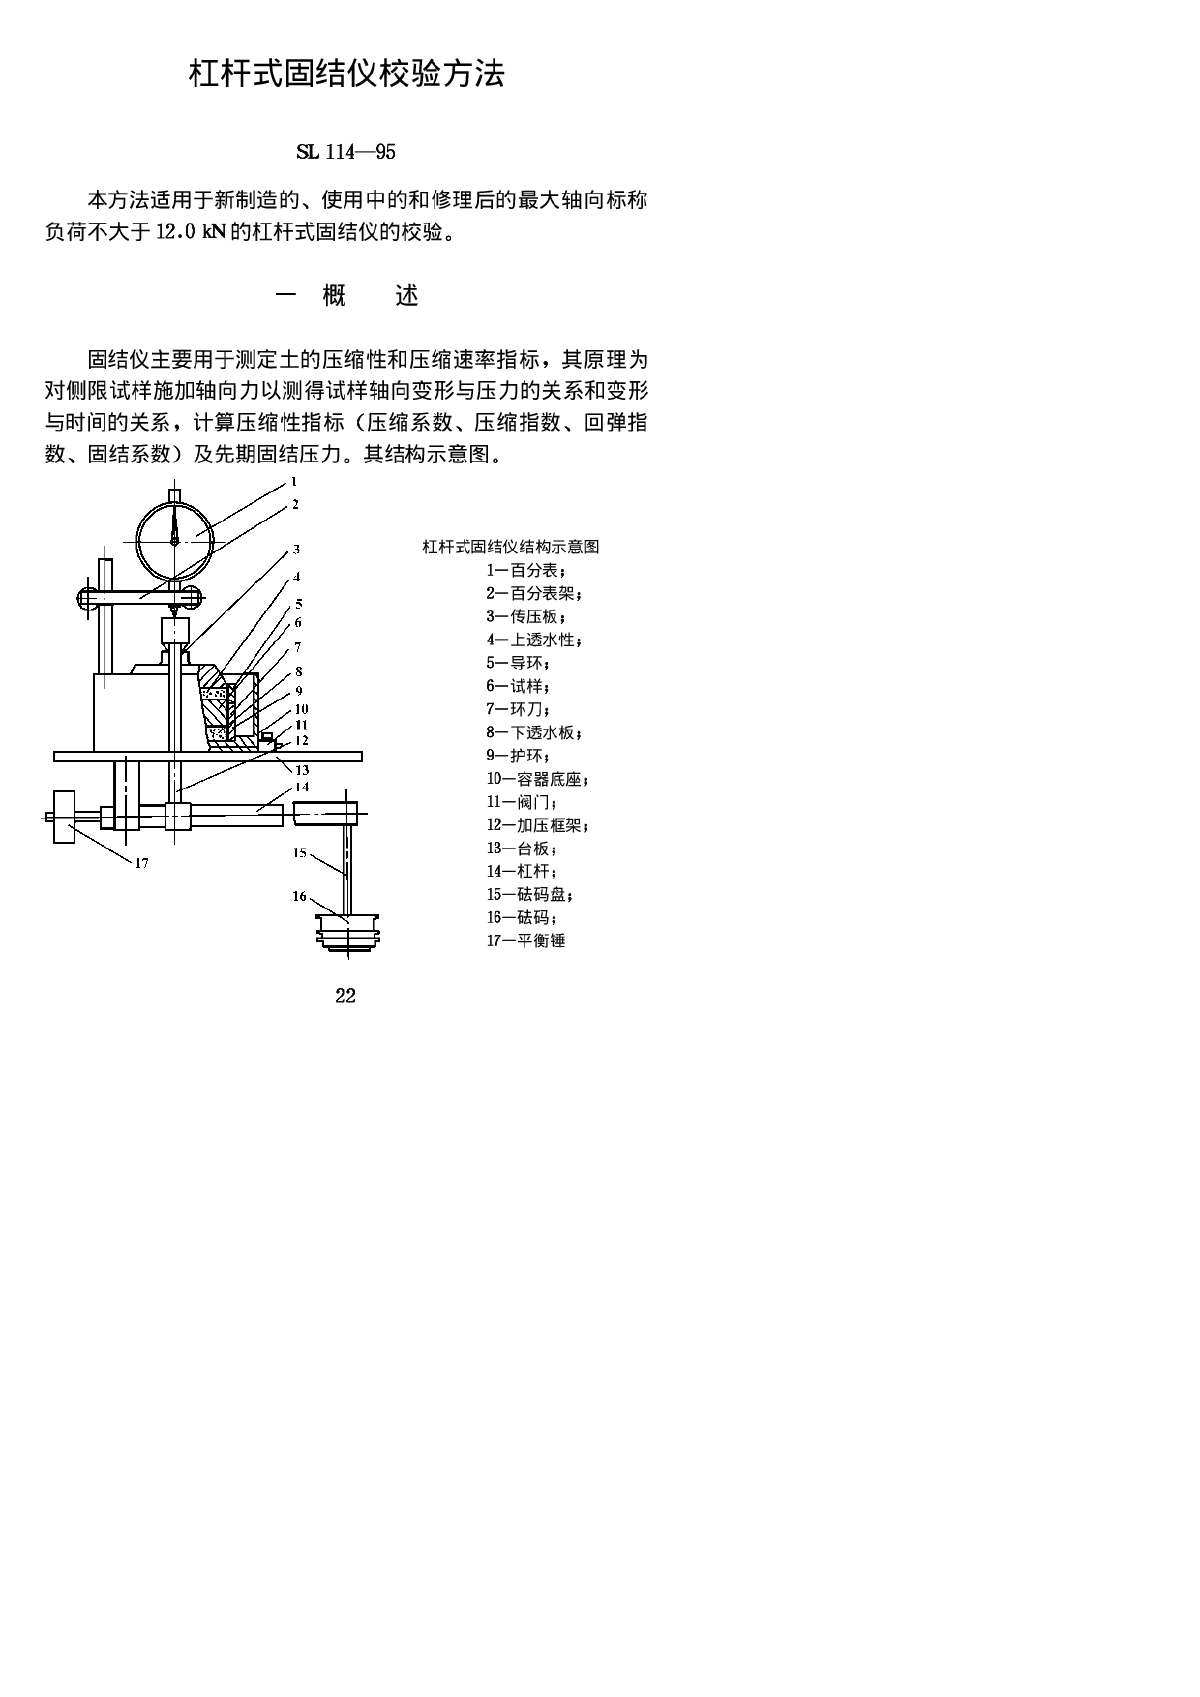 SL 114-1995 杠杆式固结仪校验方法-图一